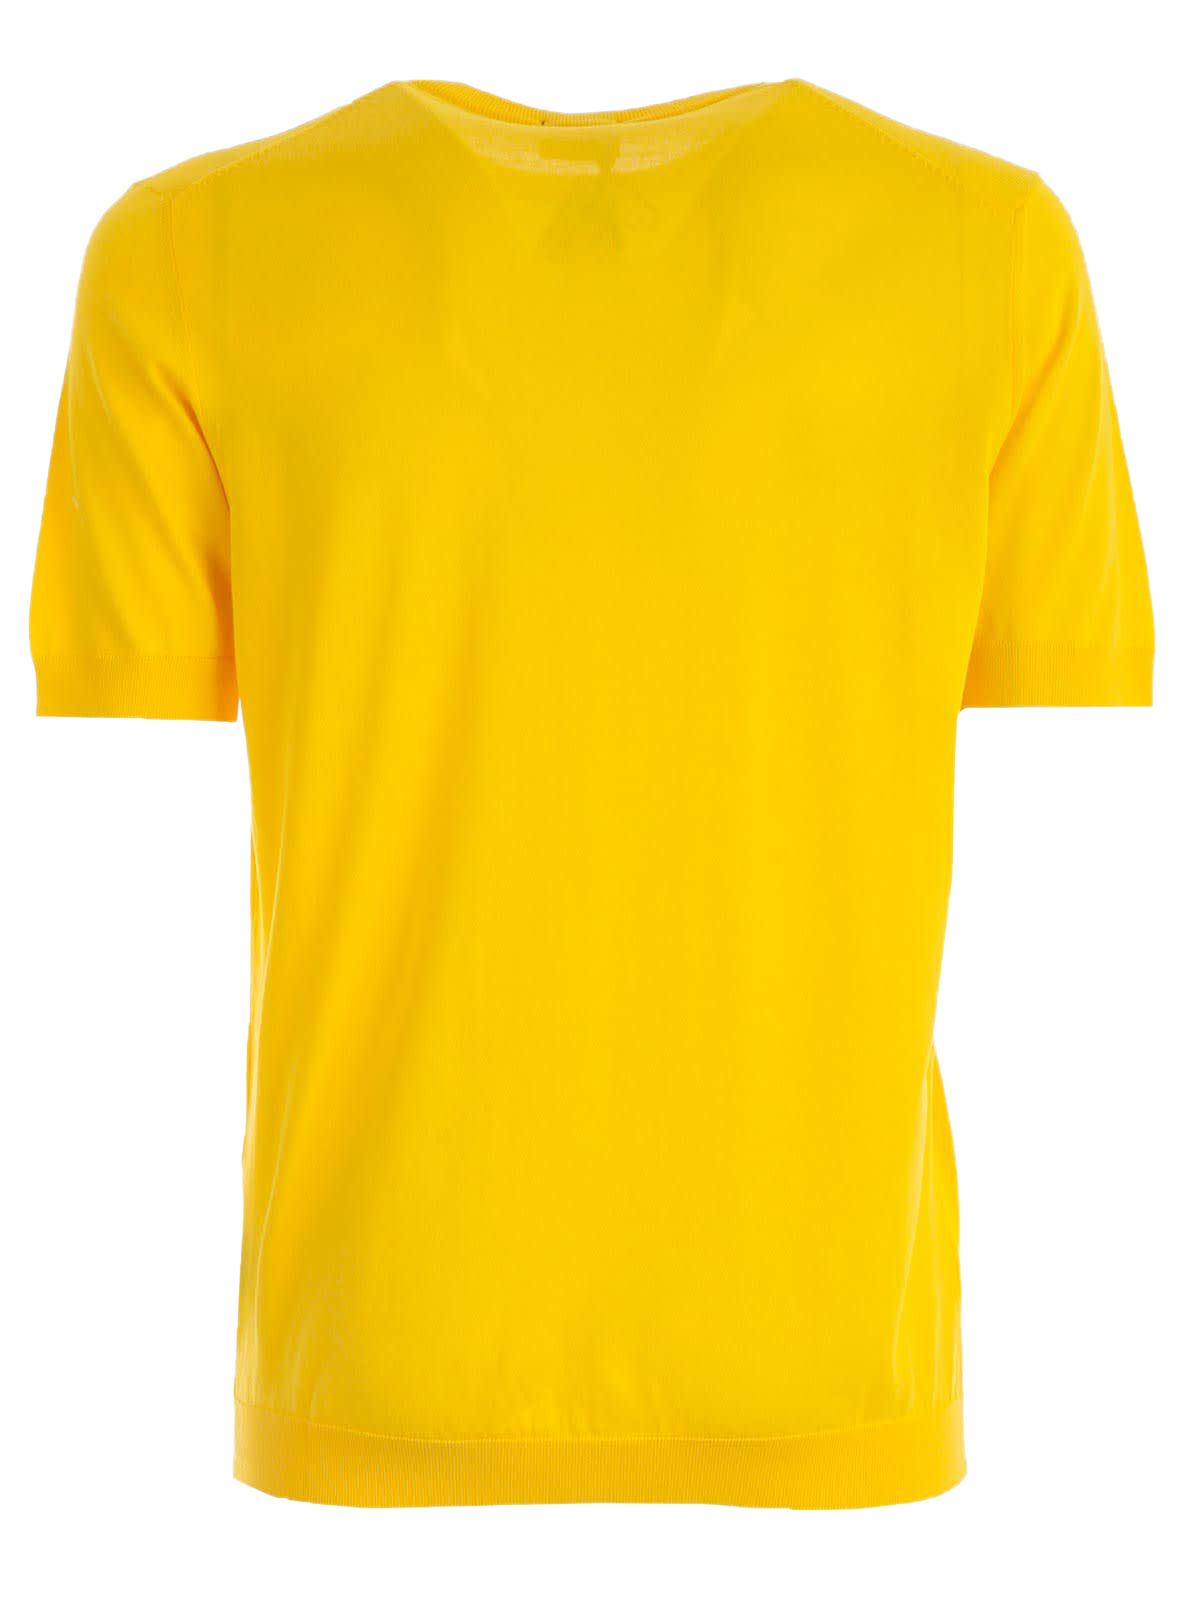 Camiseta amarilla simple imagen Transparente